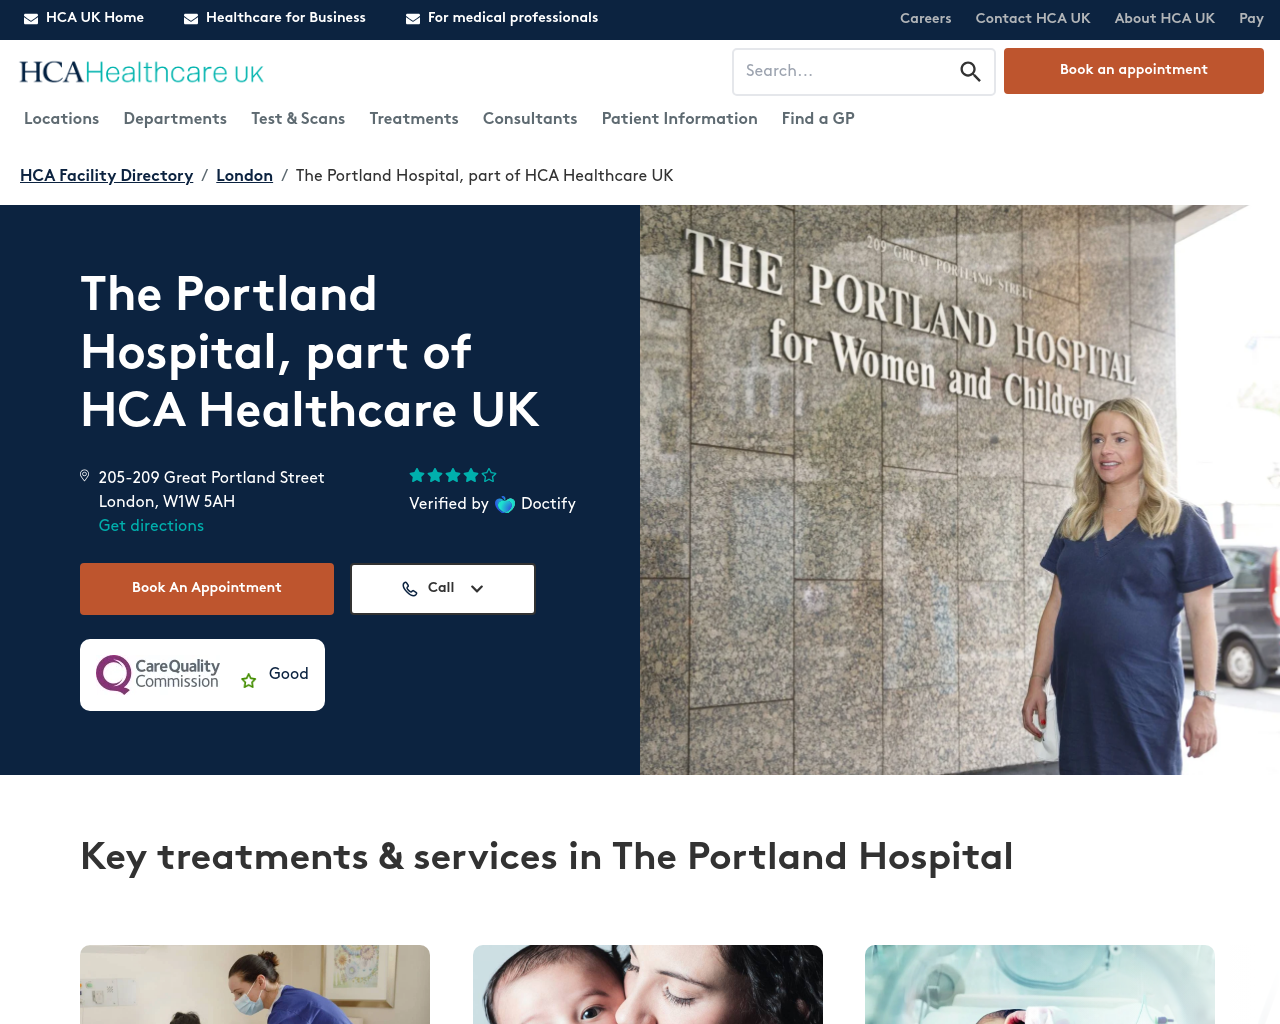 theportlandhospital.com